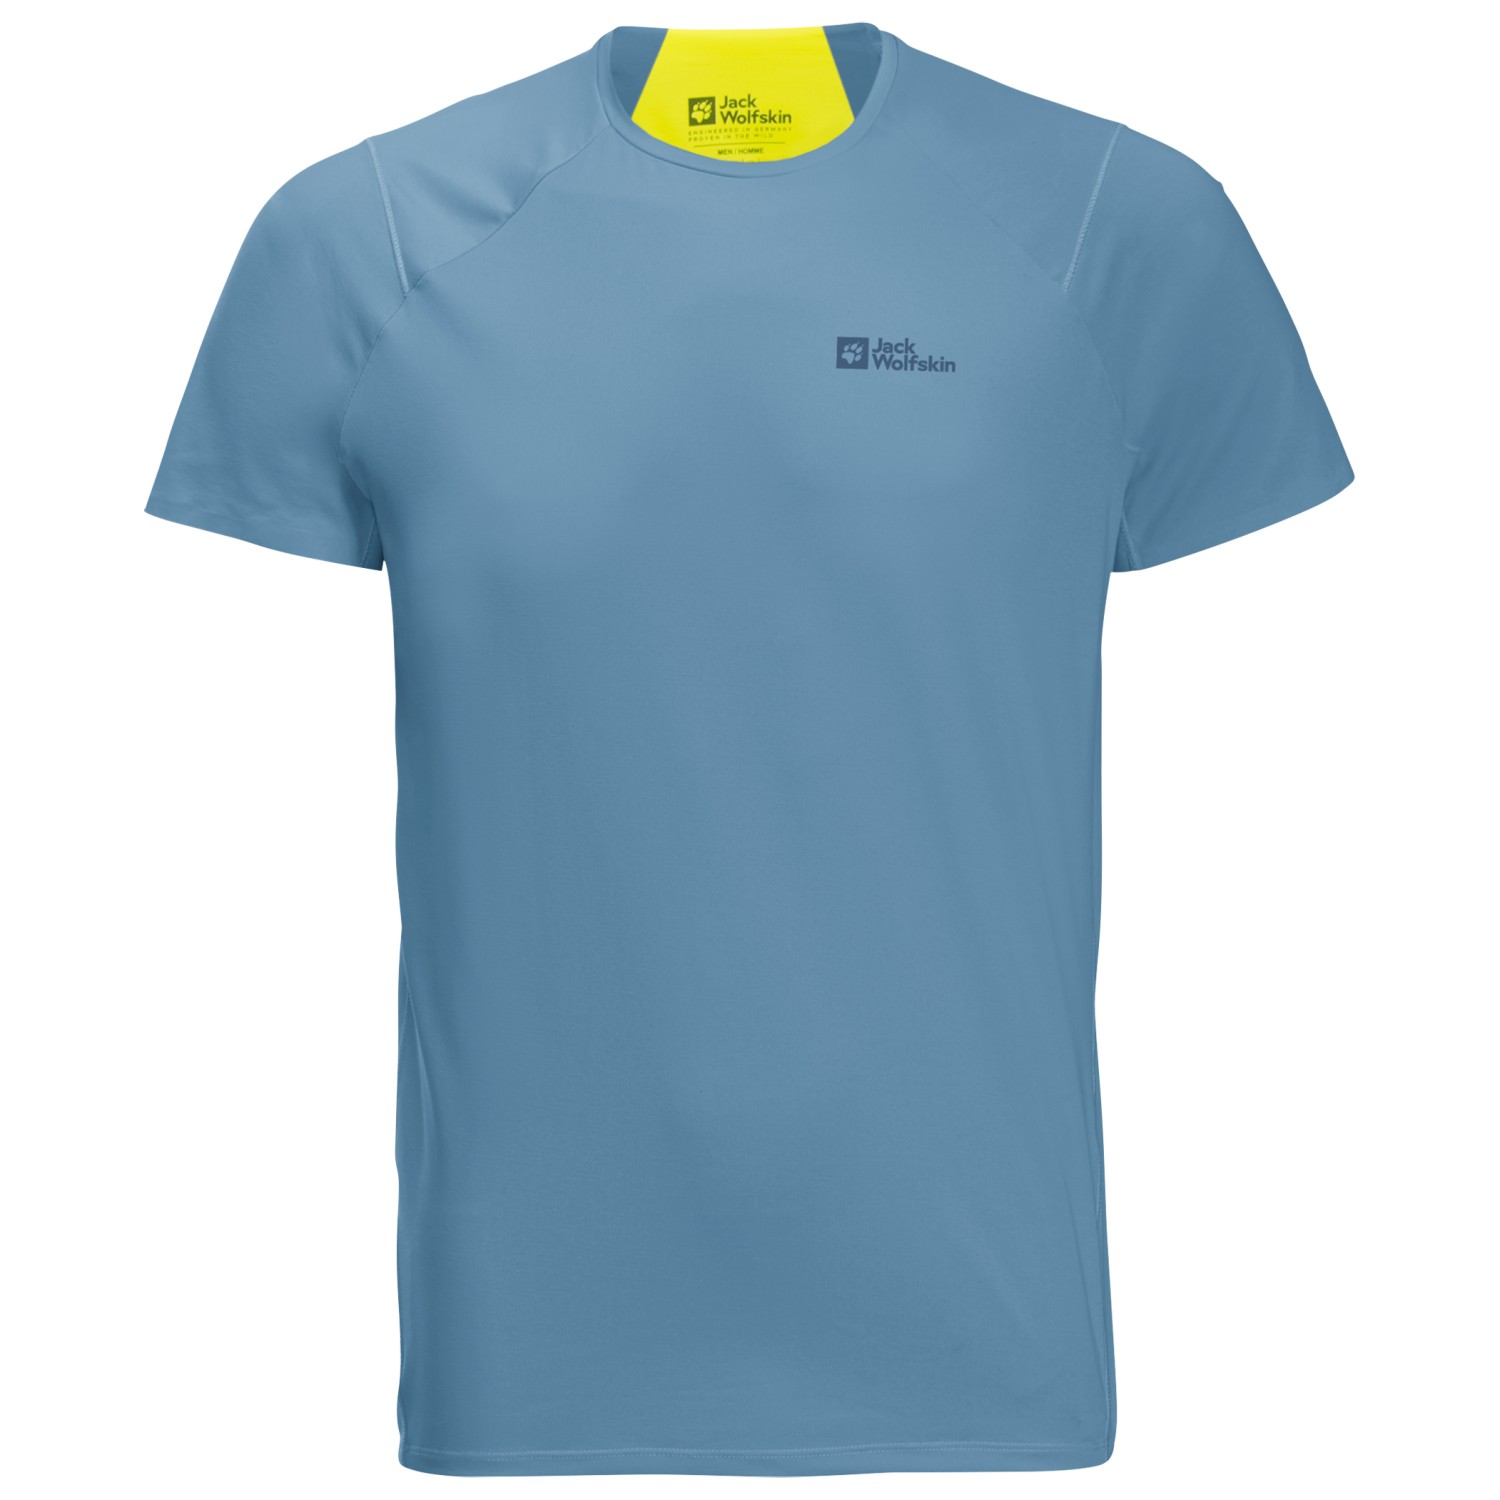 Функциональная рубашка Jack Wolfskin Prelight Chill T, цвет Elemental Blue